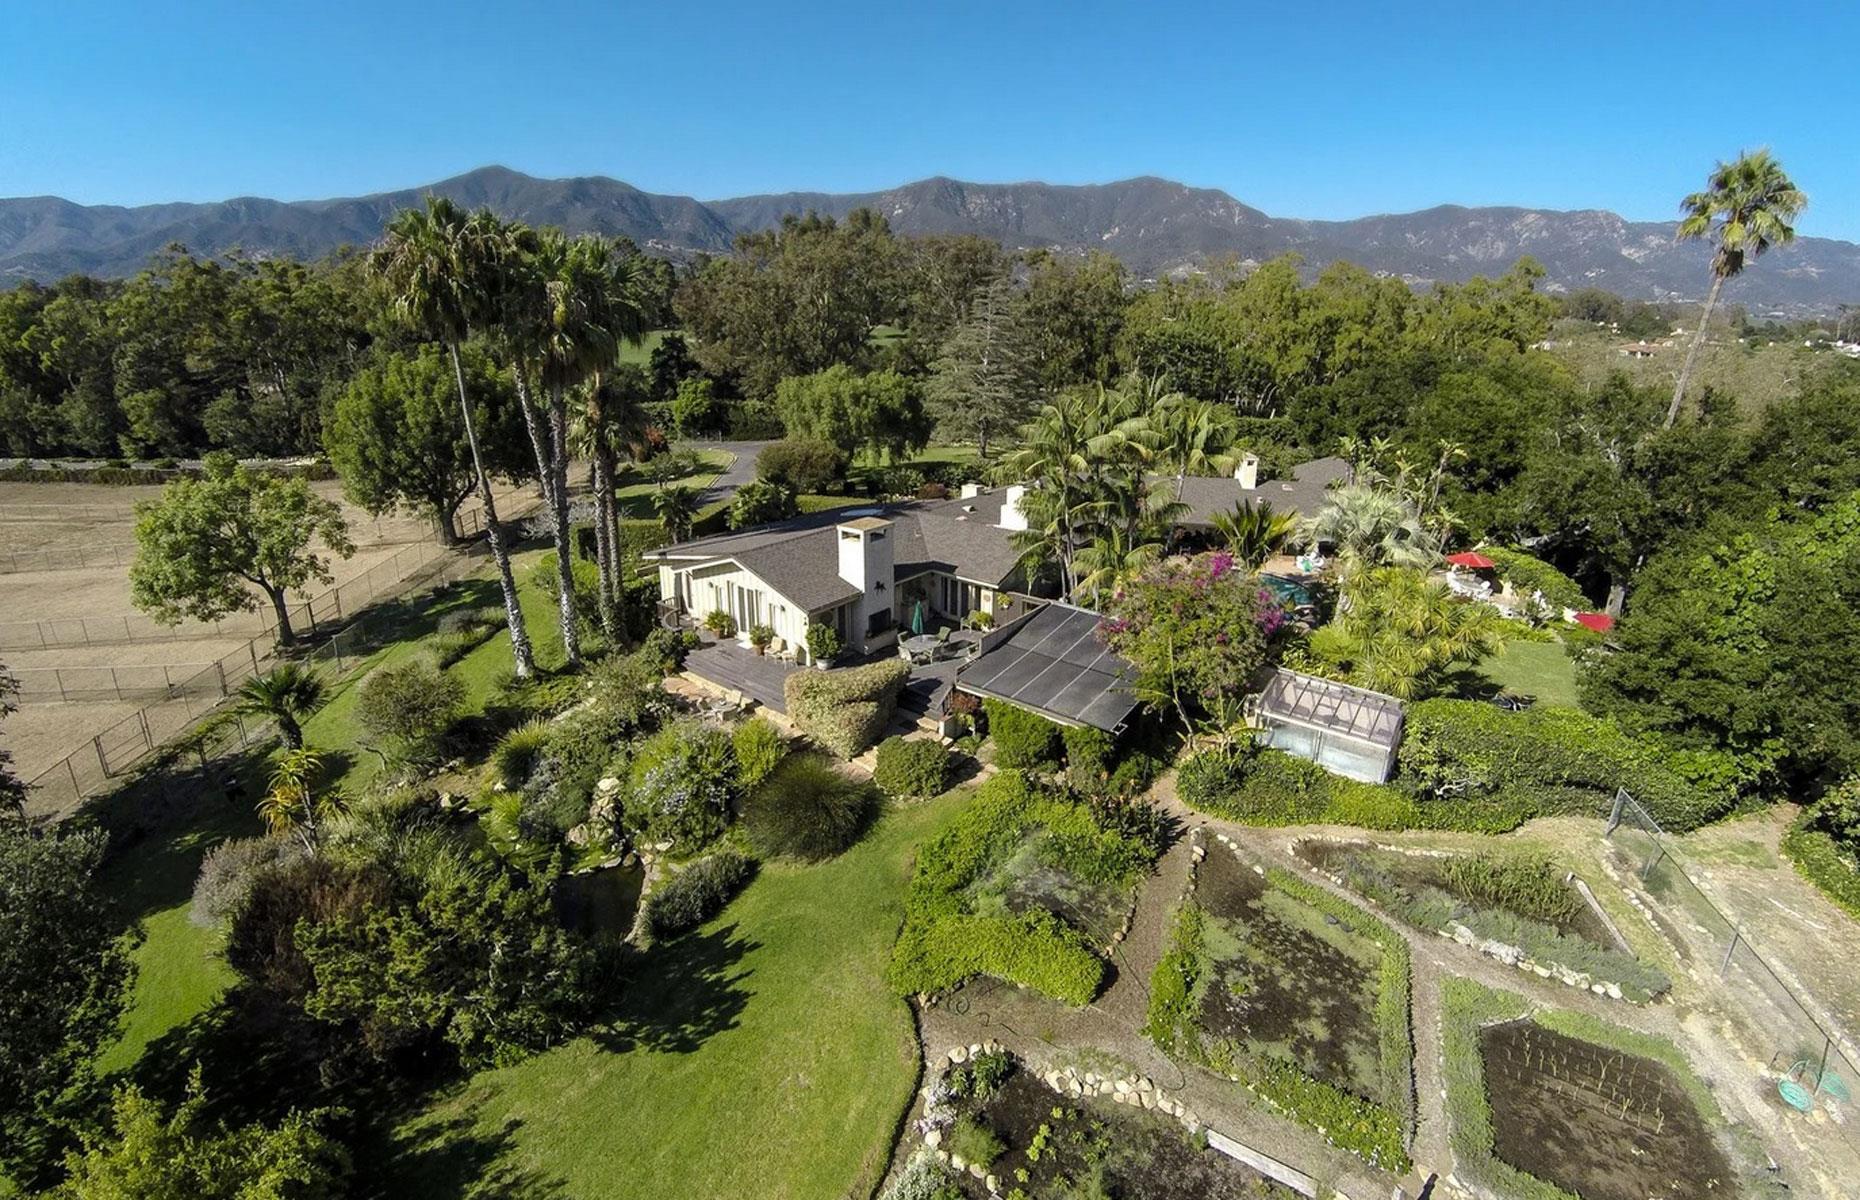 Oprah's Seamair Farm, Montecito, California